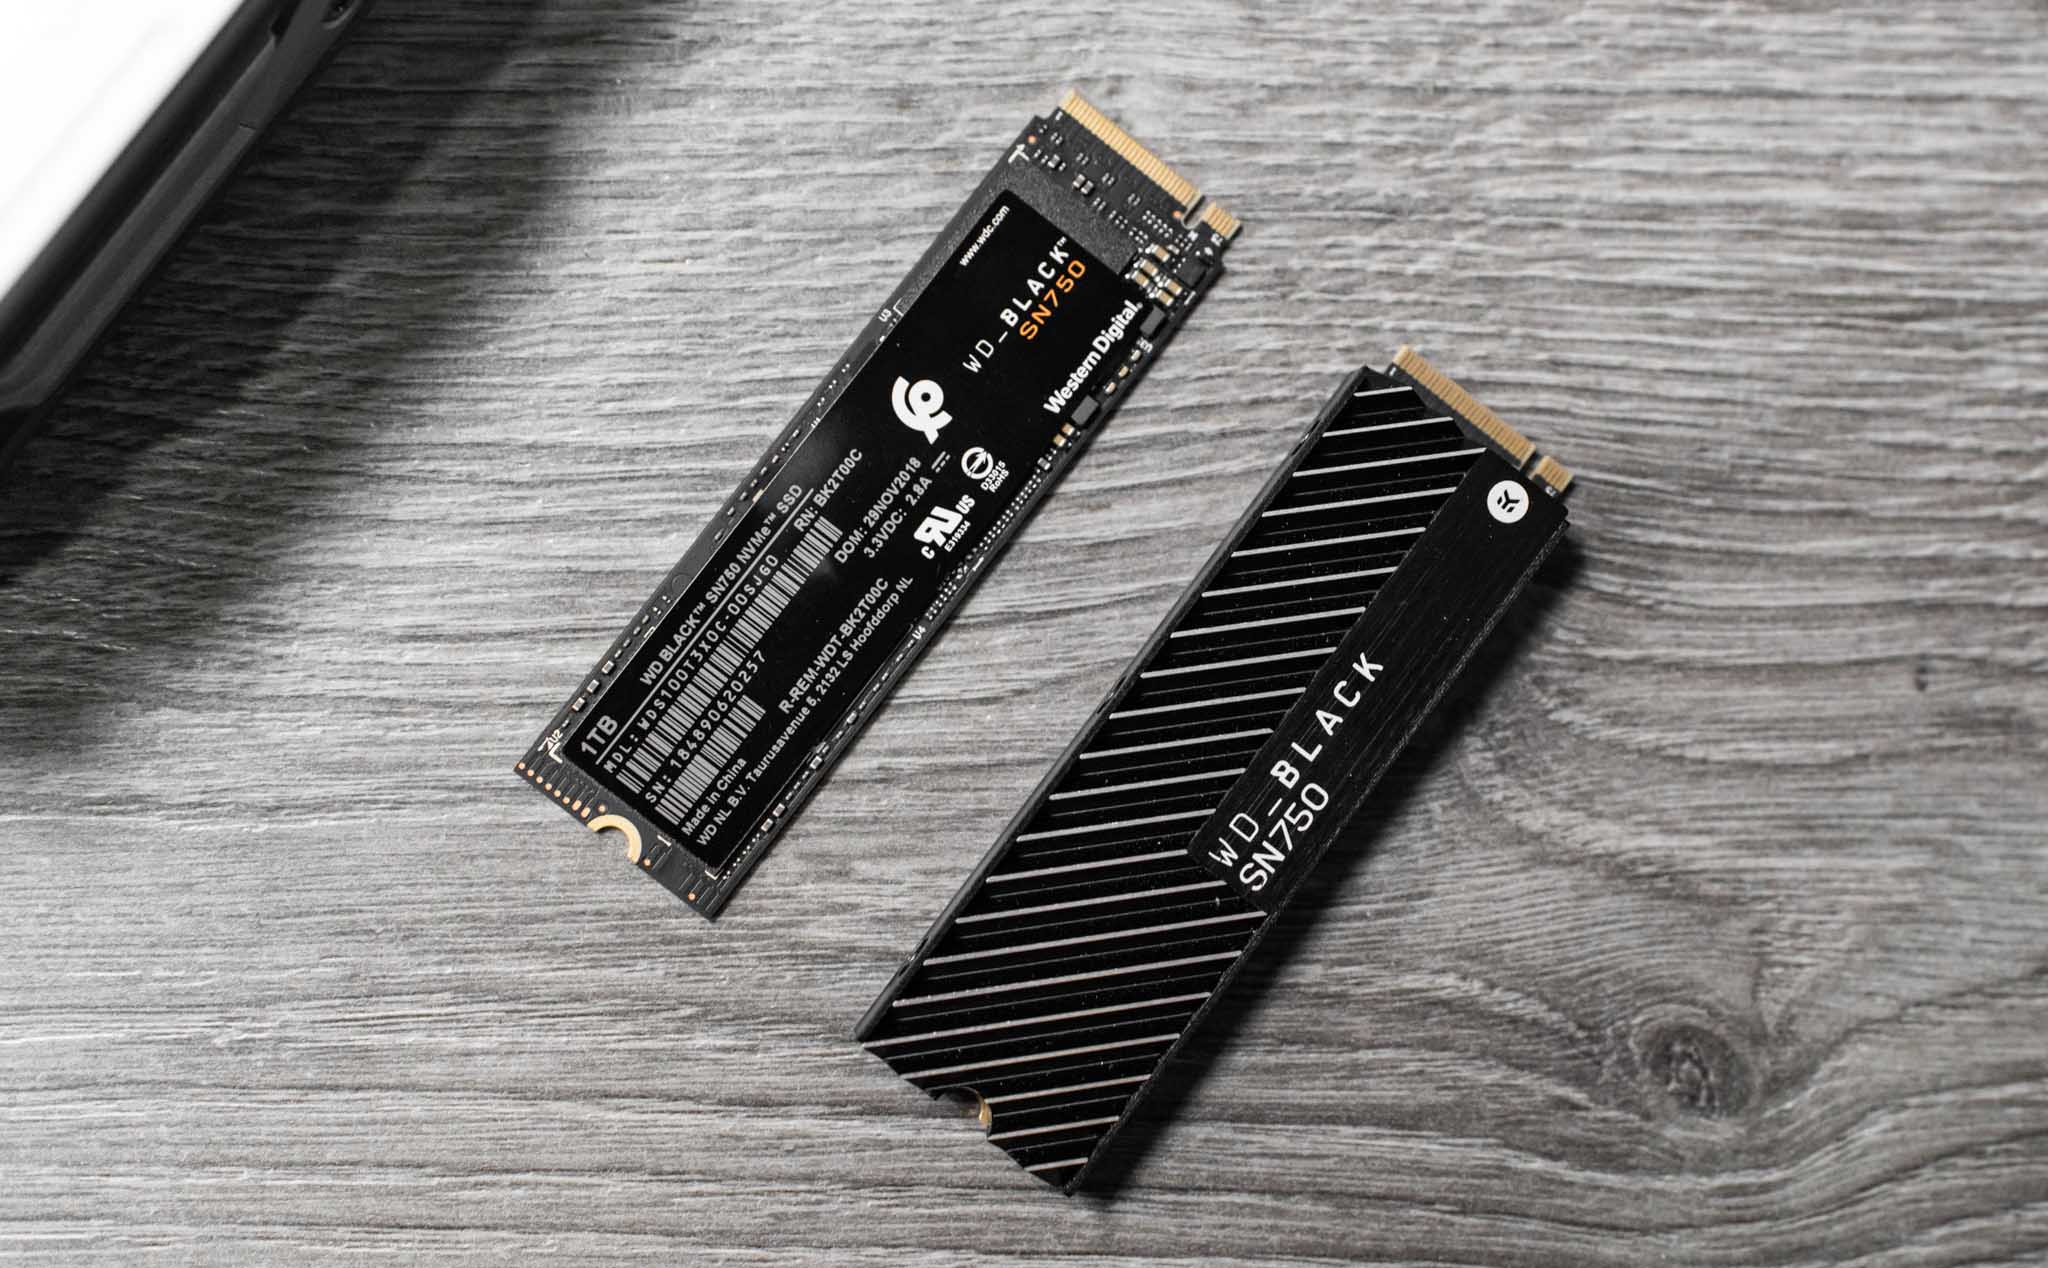 Liệu miếng tản nhiệt (heatsink) trên ổ M.2 SSD có thật sự khiến nó mát hơn và duy trì hiệu năng?